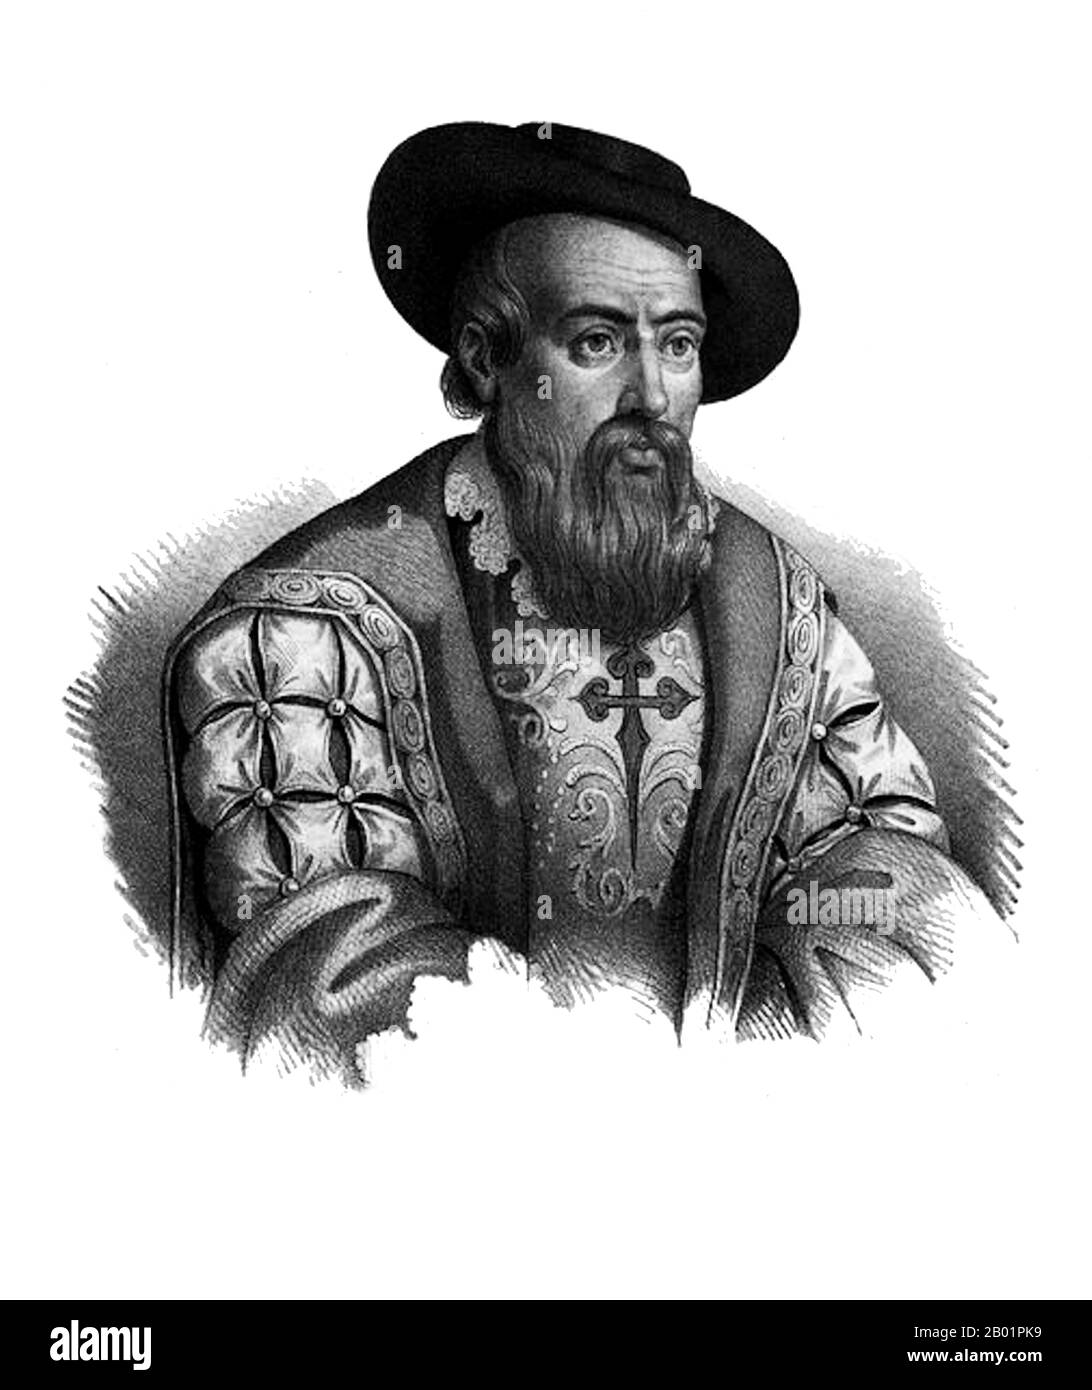 Portugal/Inde : Dom Francisco de Almeida (c. 1450 - 1 mars 1510), premier vice-roi de l'Inde (r. 1503-1510). Gravure de Gregorio Lopes (c. 1490-1550), c. 1524. Francisco de Almeida, également connu sous le nom de « Grand Dom Francisco », était un noble portugais, un soldat et un explorateur. Il se distingua comme conseiller du roi Jean II de Portugal et plus tard dans les guerres contre les Maures et dans la conquête de Grenade en 1492. En 1503, il est nommé premier gouverneur et vice-roi de l'État portugais de l'Inde. Almeida est crédité de l'établissement de l'hégémonie portugaise dans l'océan Indien. Banque D'Images